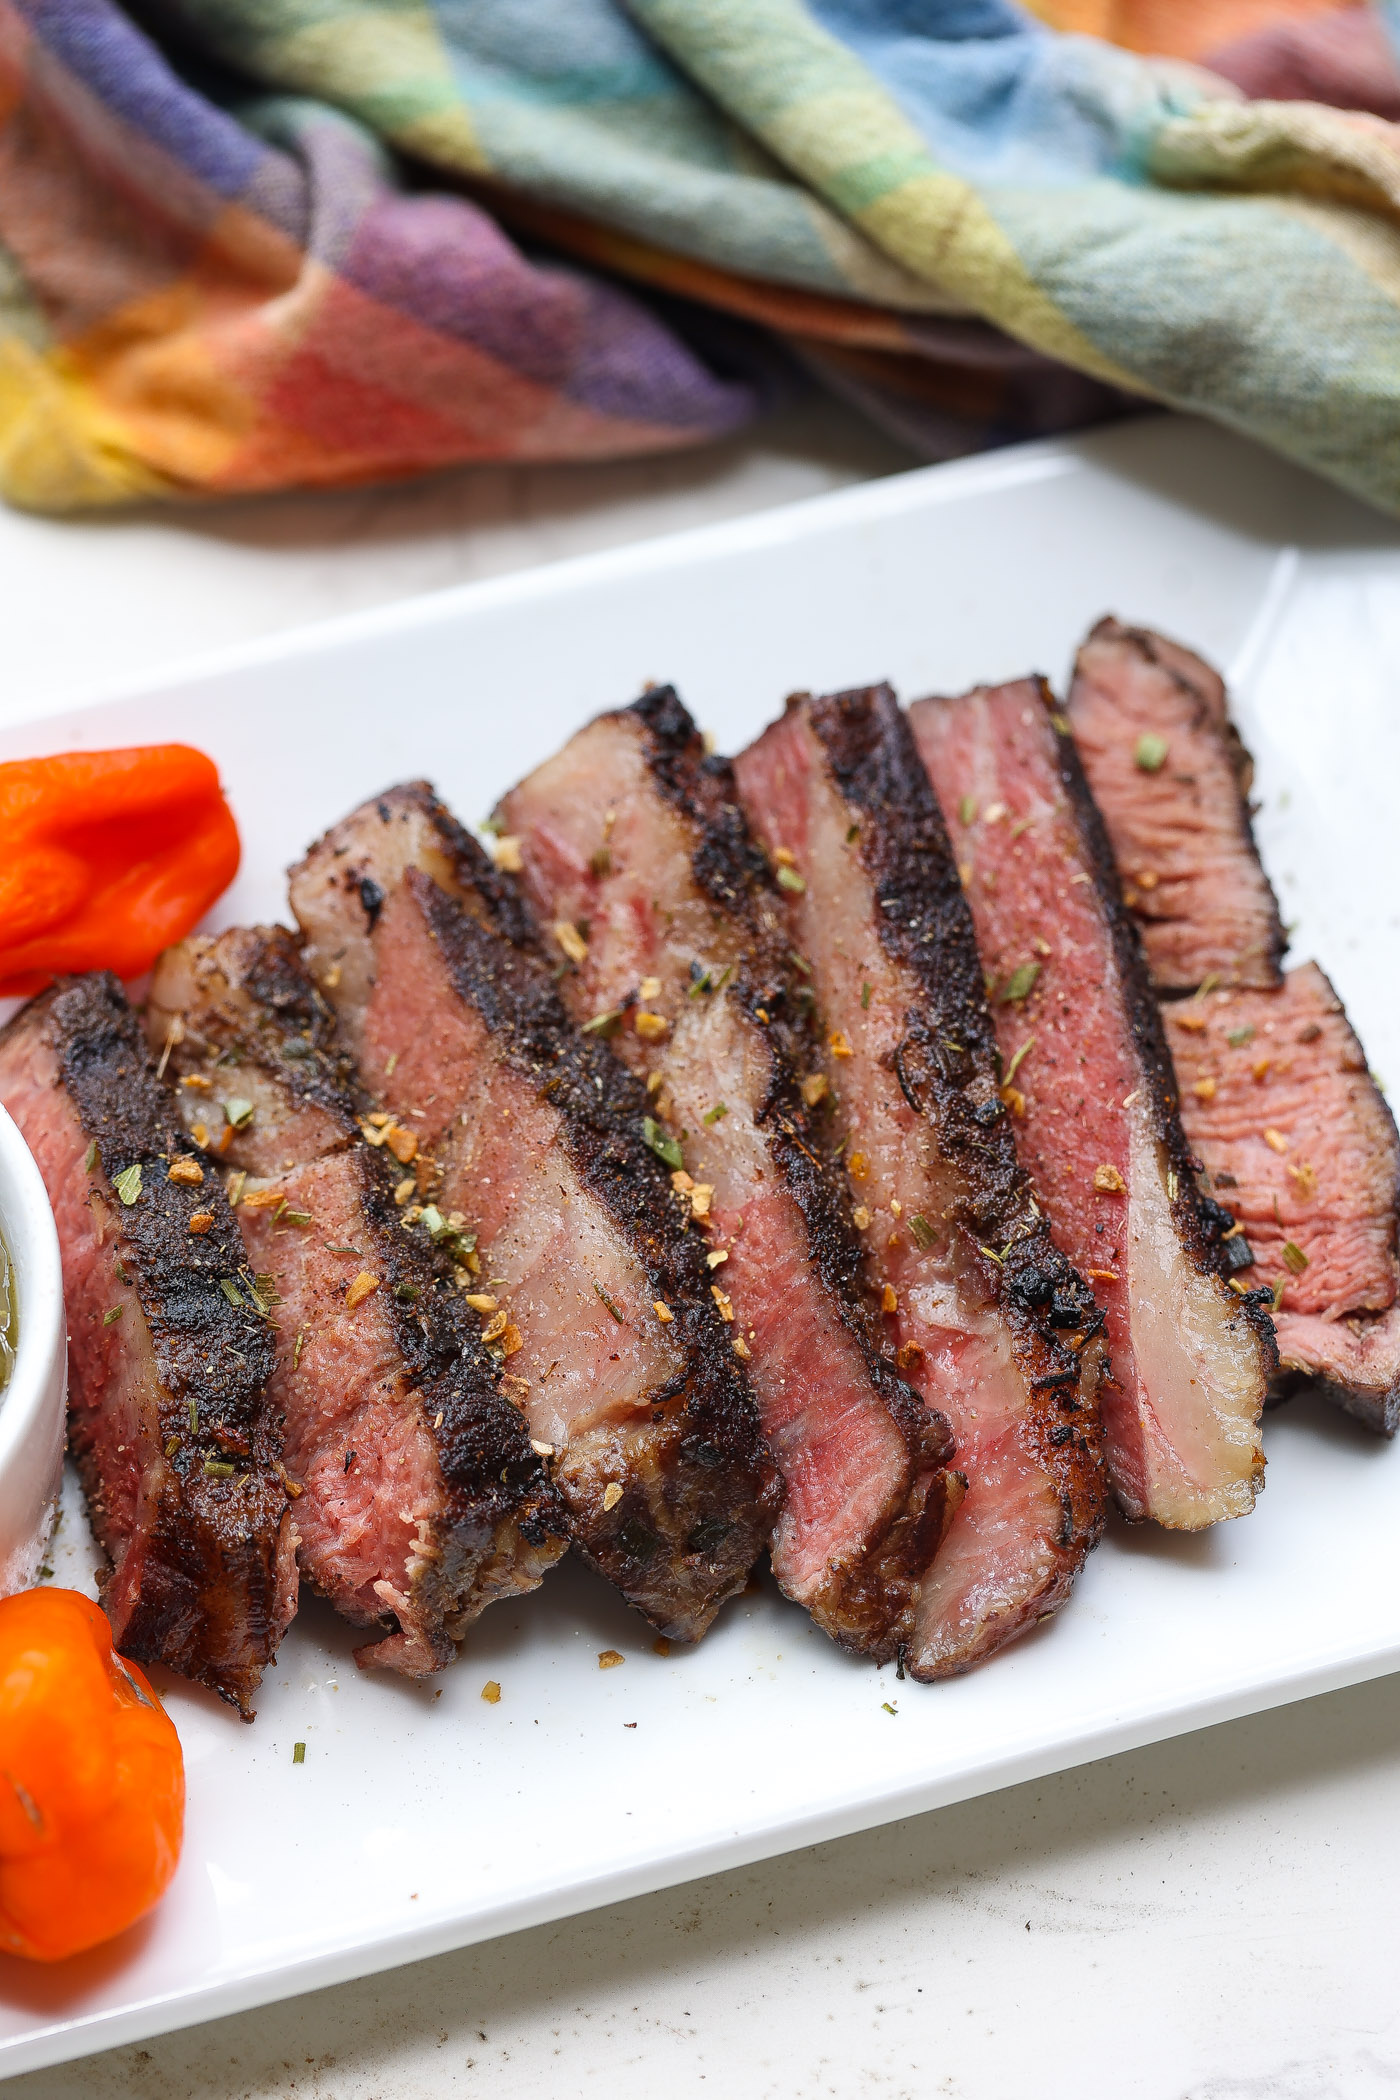 tender slices of sous vide chuck steak on white plate